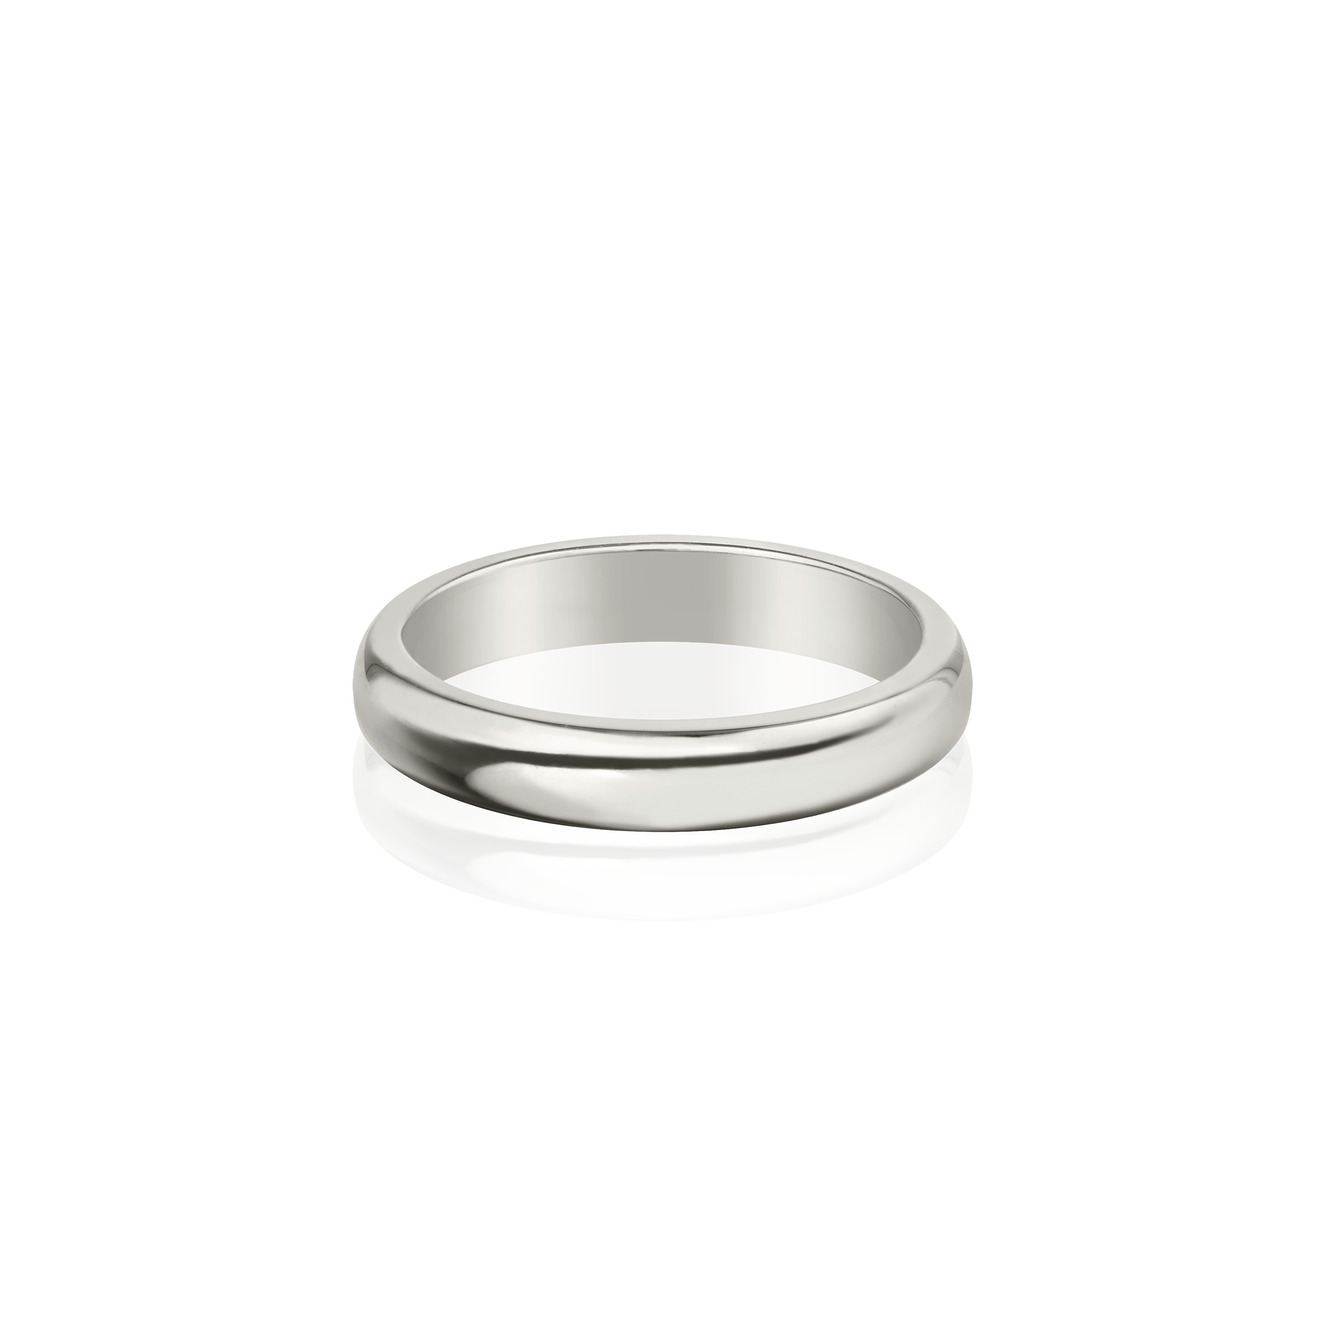 Vertigo Jewellery Lab Фаланговое кольцо из серебра ESSENTIALS vertigo jewellery lab кольцо hexo из белого золота с топазом авторской огранки